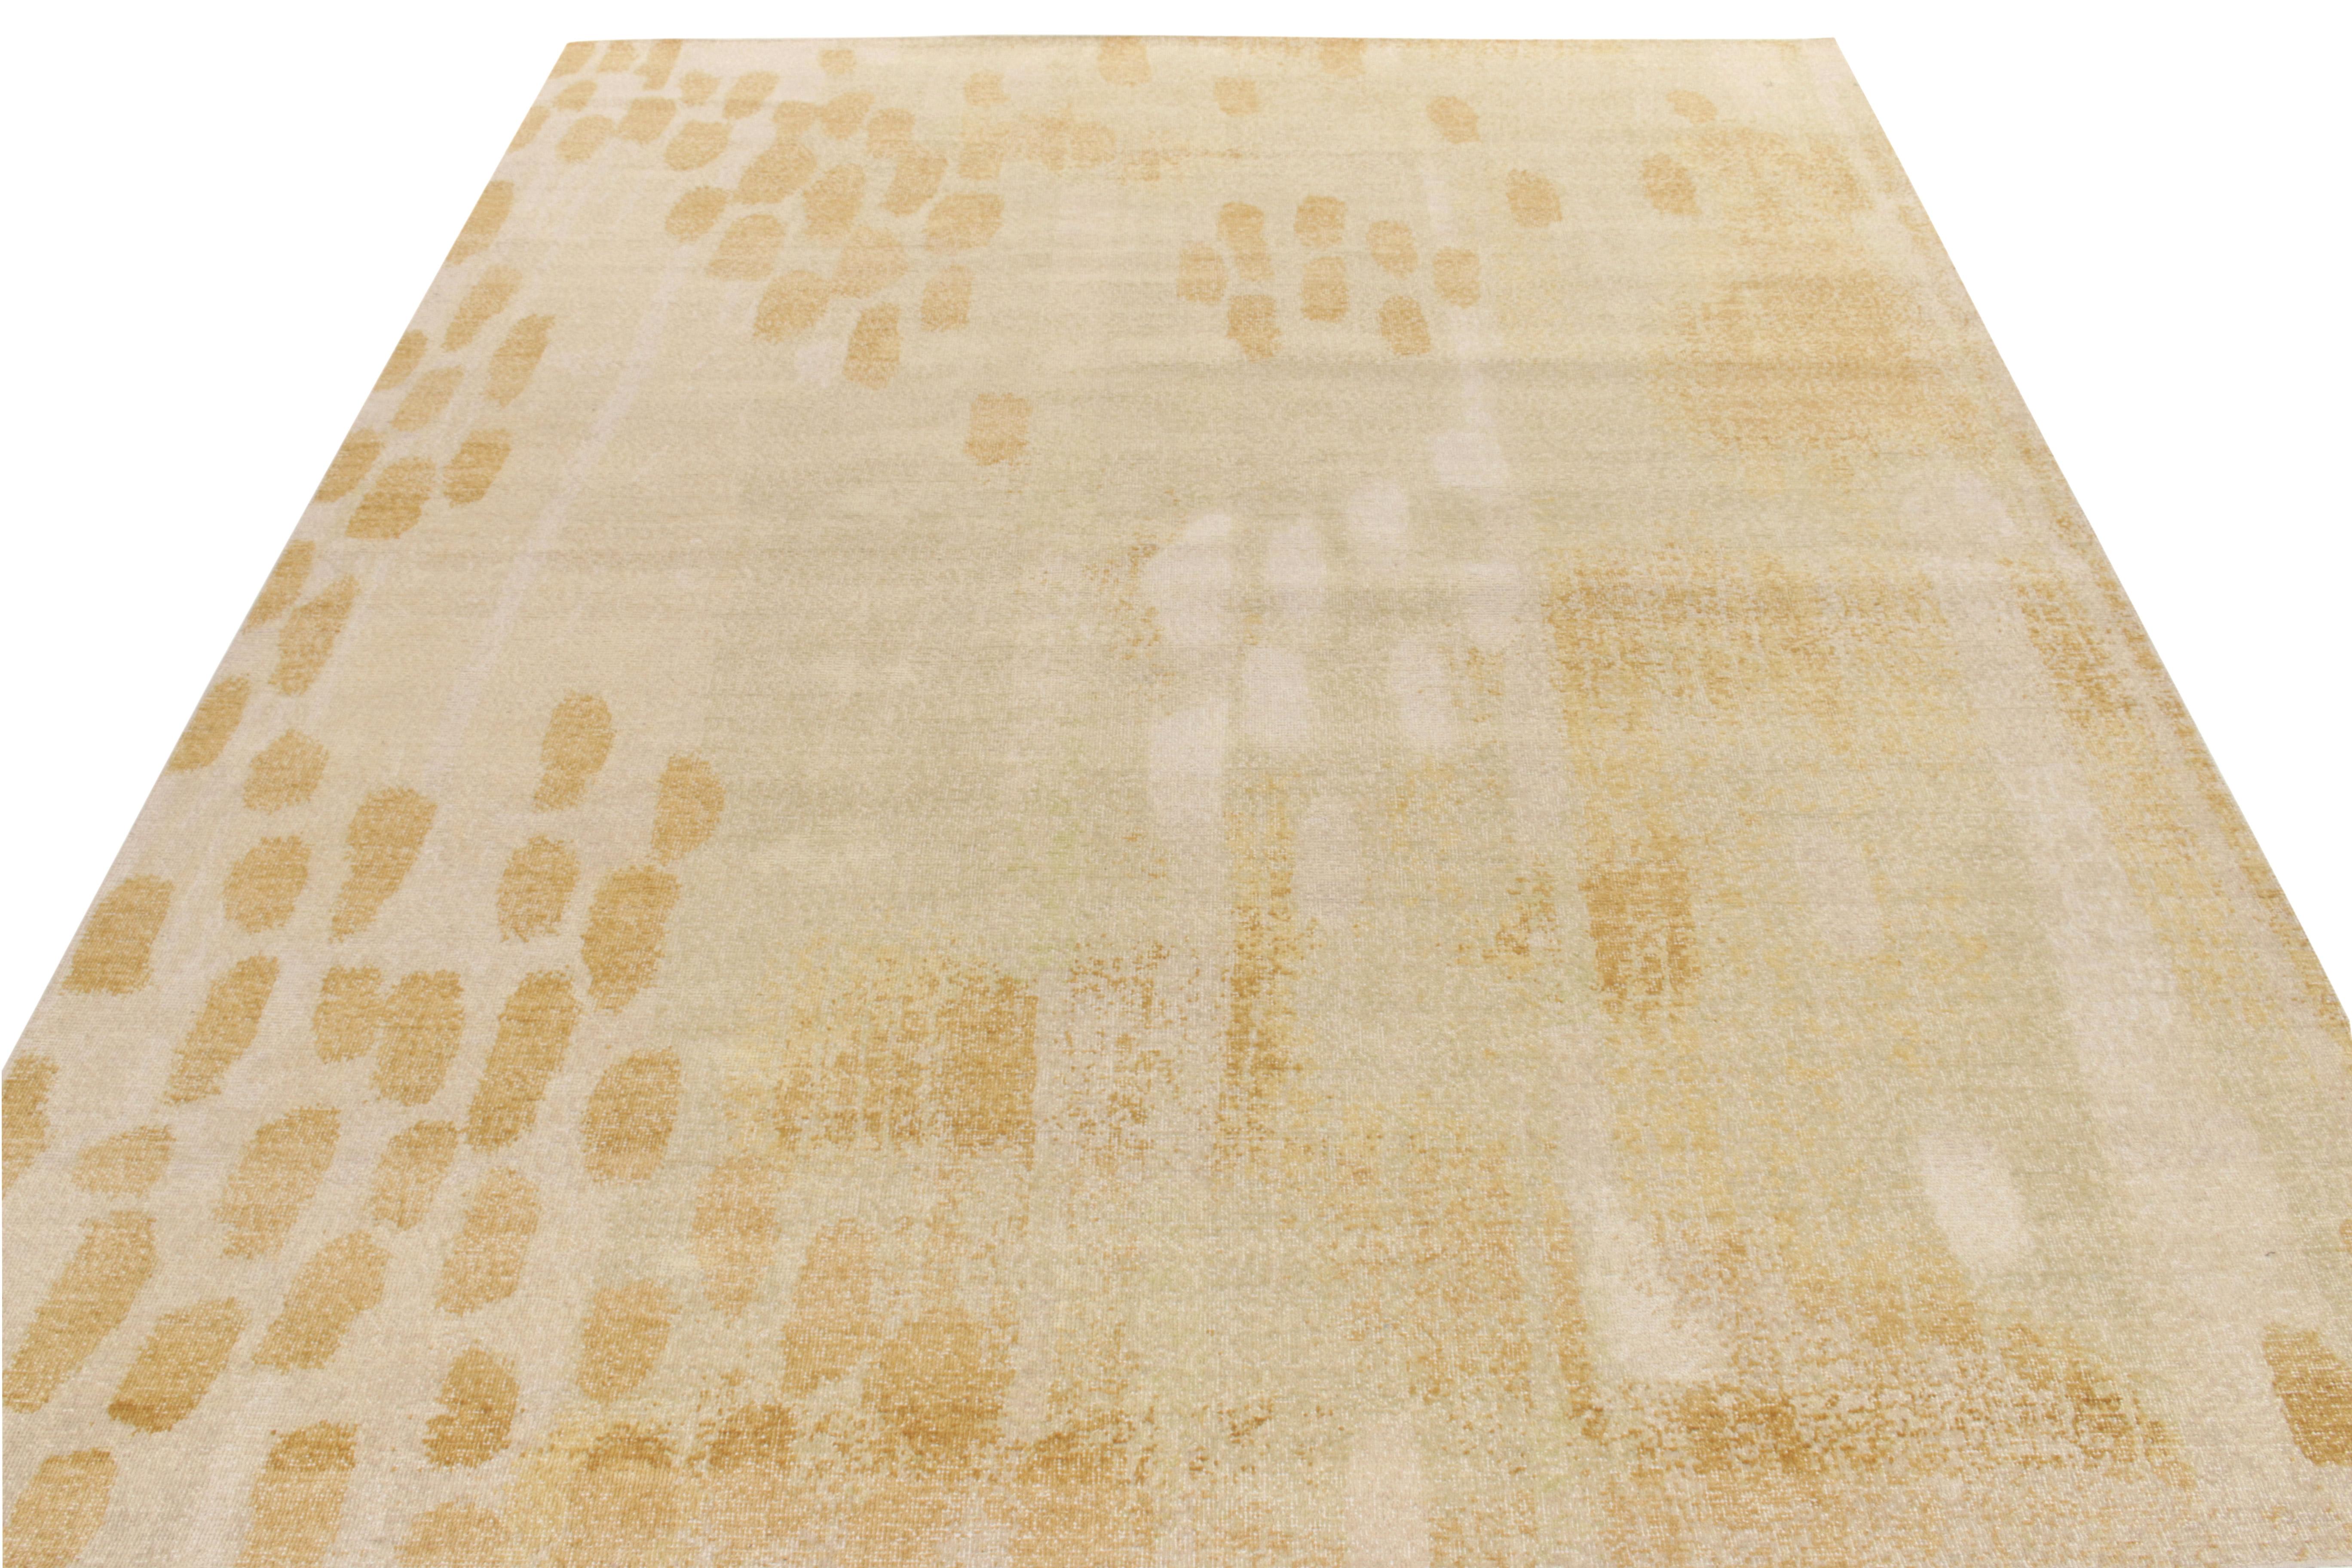 Rug & Kilim definiert die Sprache des Stils neu und präsentiert einen abstrakten Teppich im Format 9x12, der die Homage Collection'S ergänzt. Handgeknüpft in Wolle, ein elegantes Stück aus der Arbeit von Nikita Nagpal in unserem charakteristischen